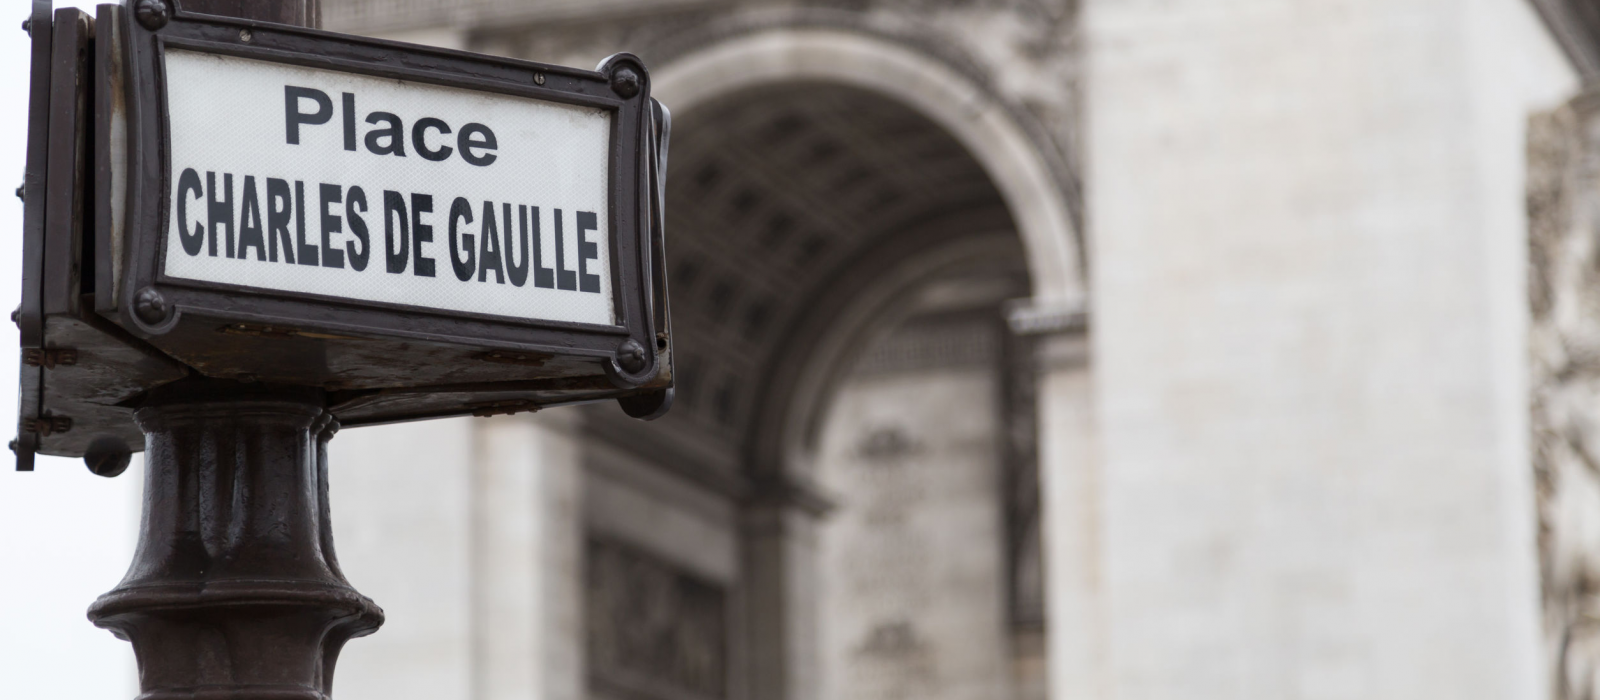 Les noms les plus donnés aux rues françaises